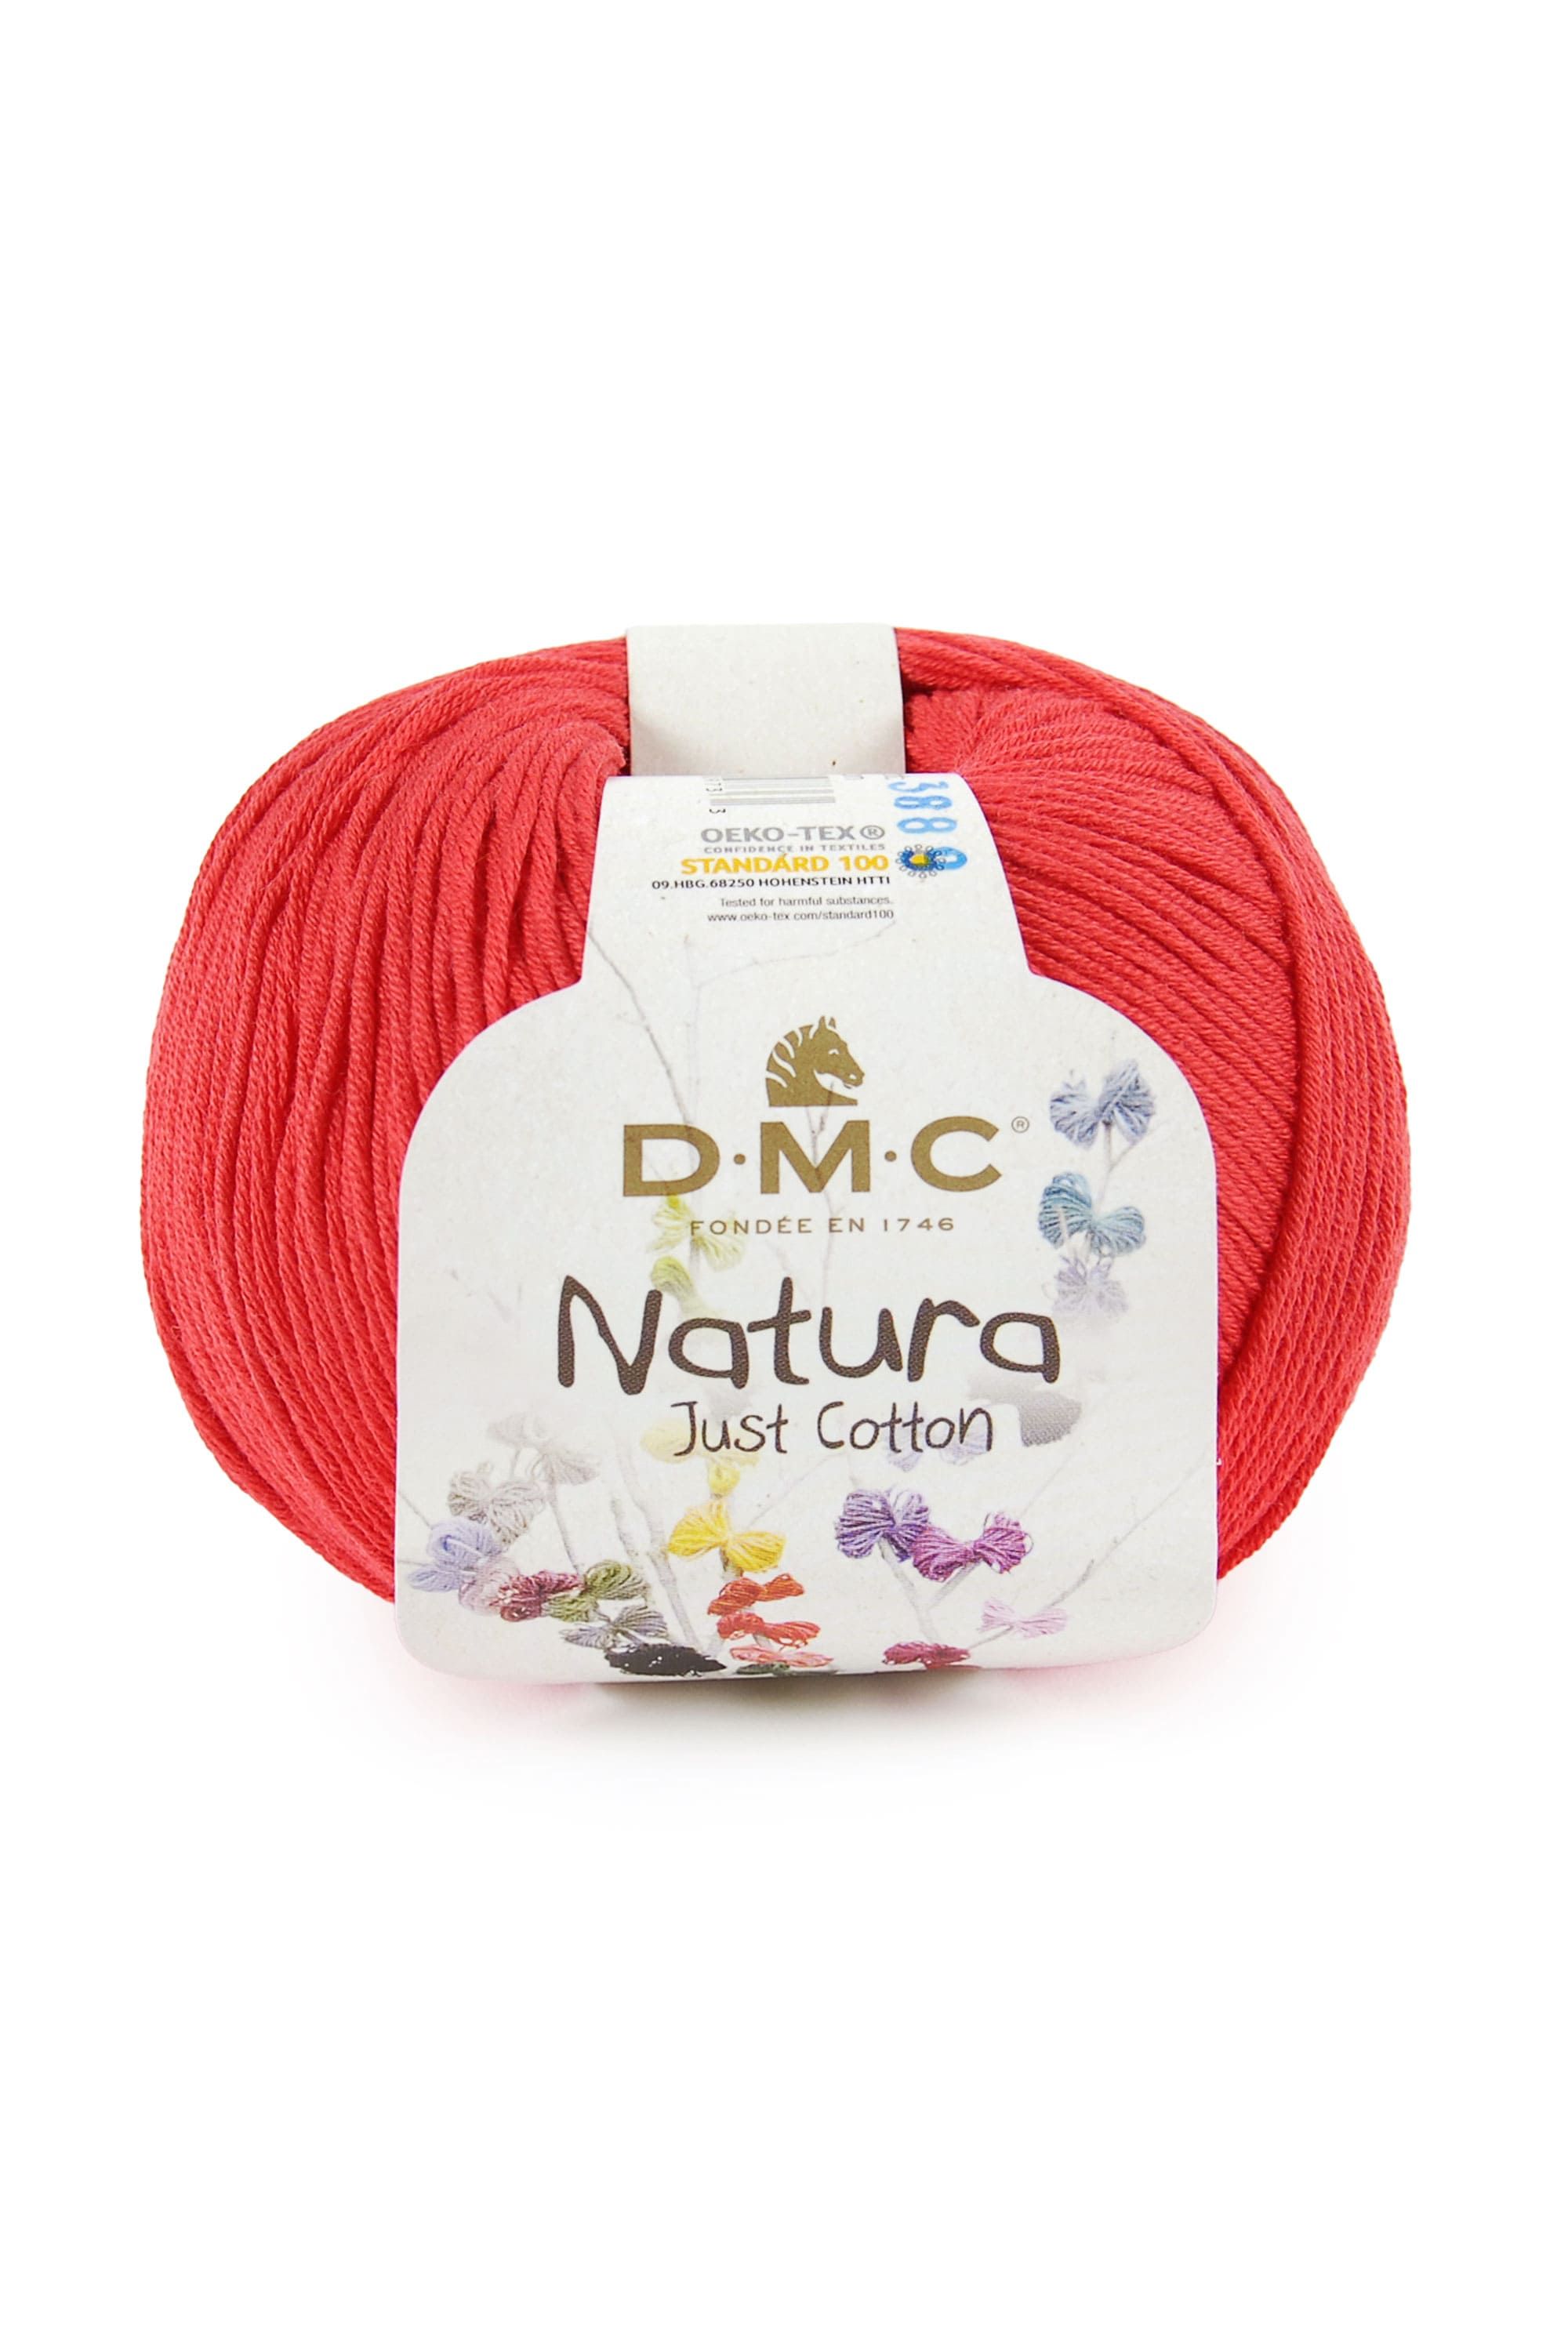 DMC Nature Moyen Juste de Coton